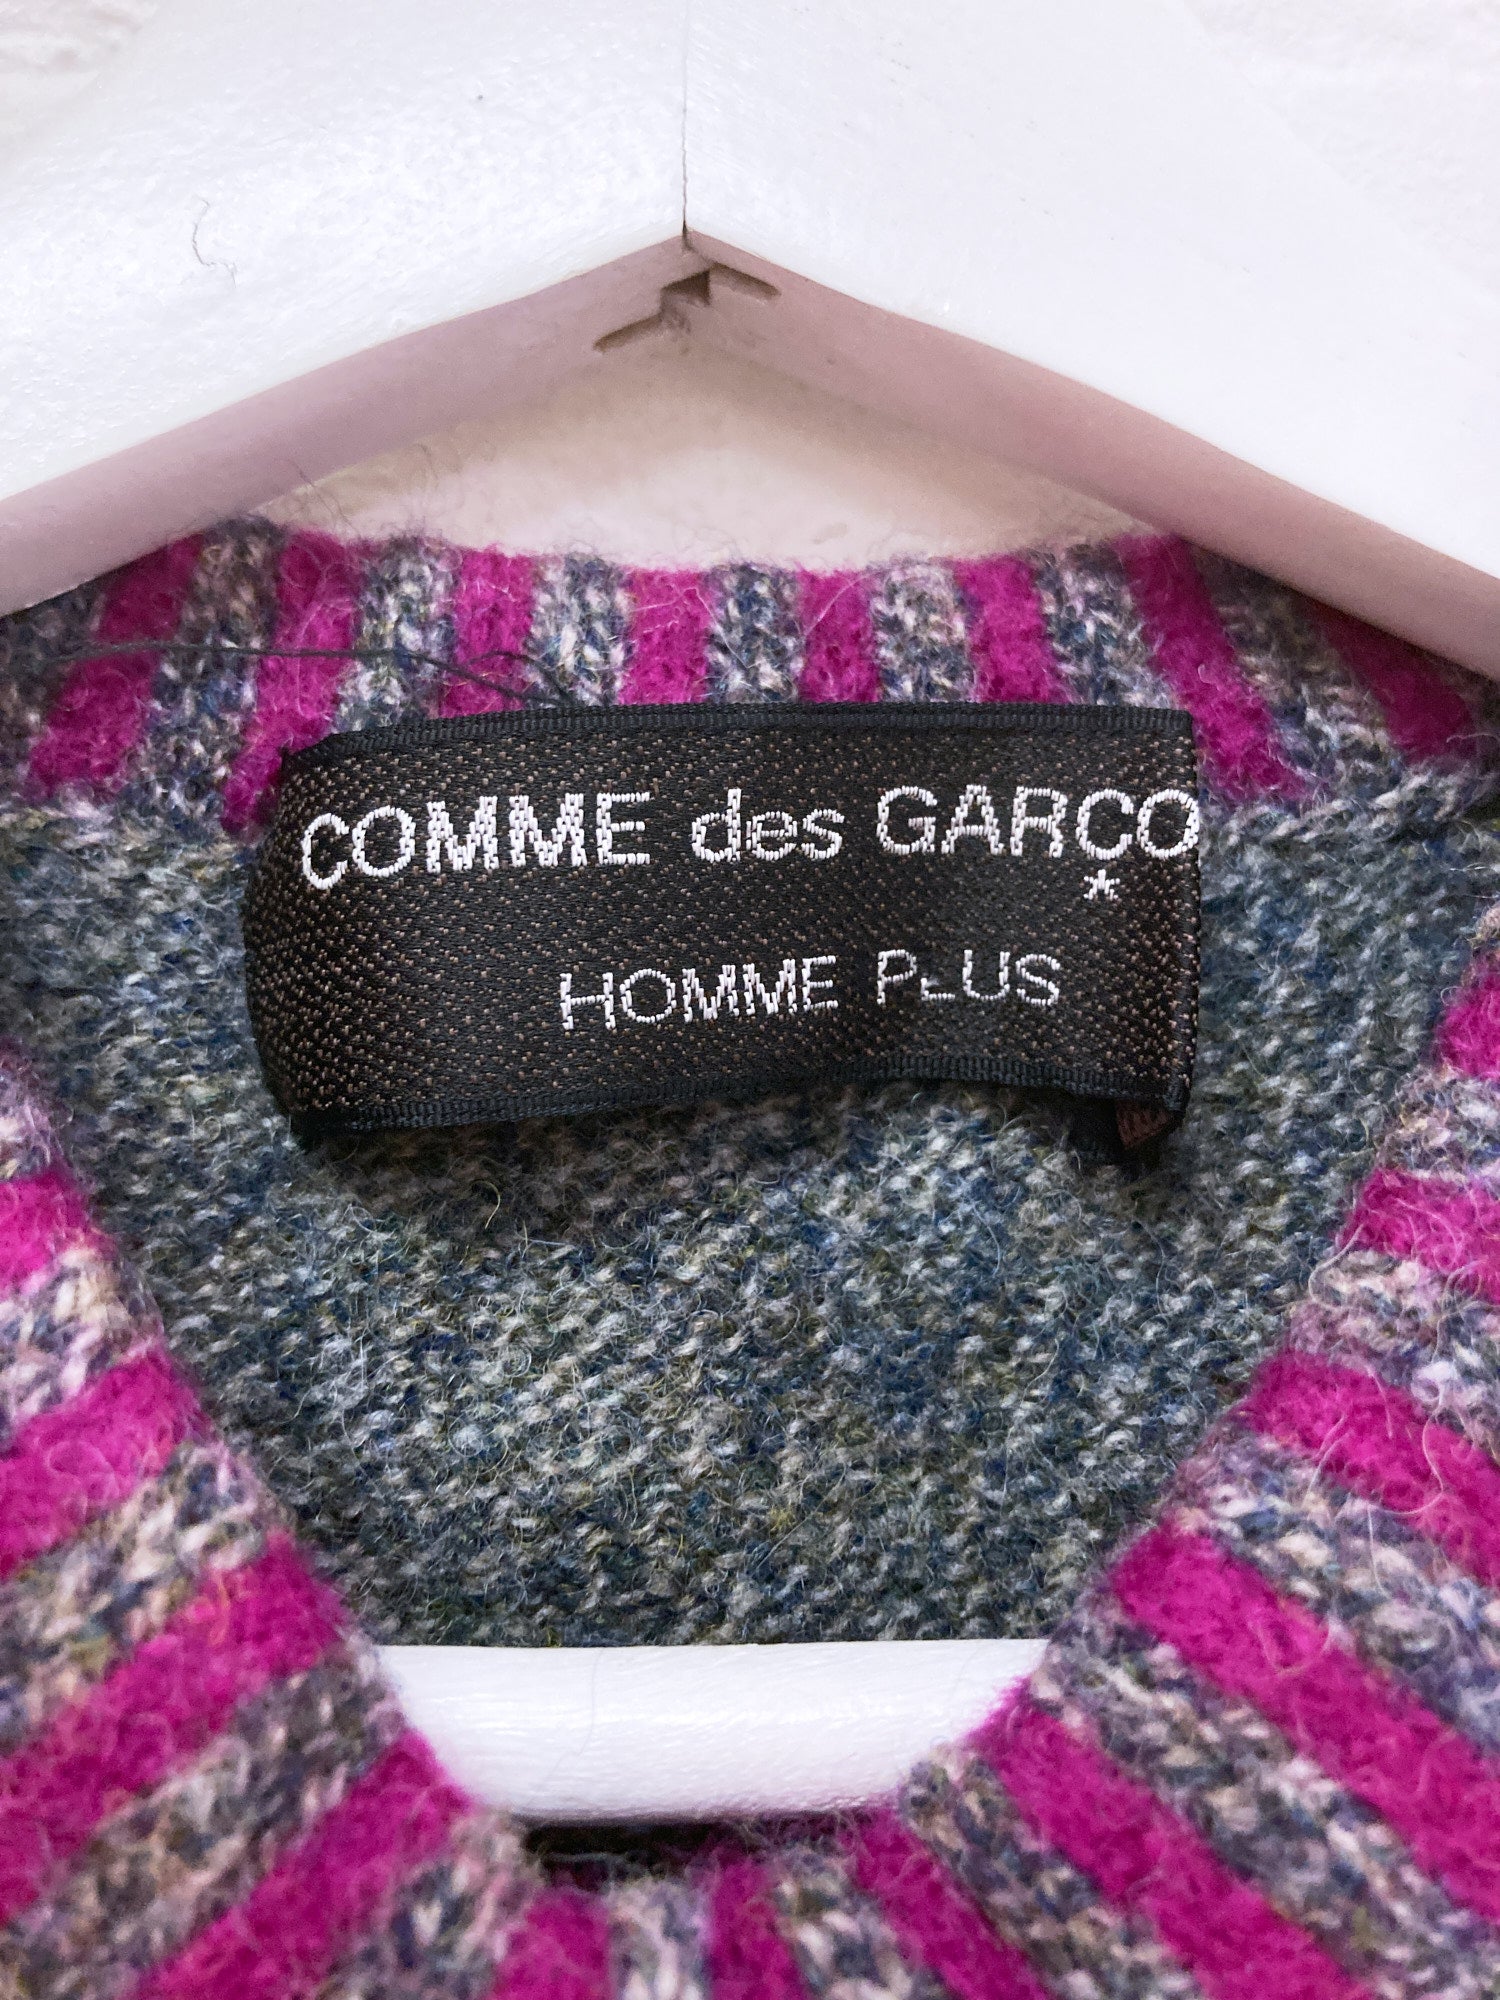 Comme des Garcons Homme Plus 1996 heathered grey wool knit purple trim vest - XS